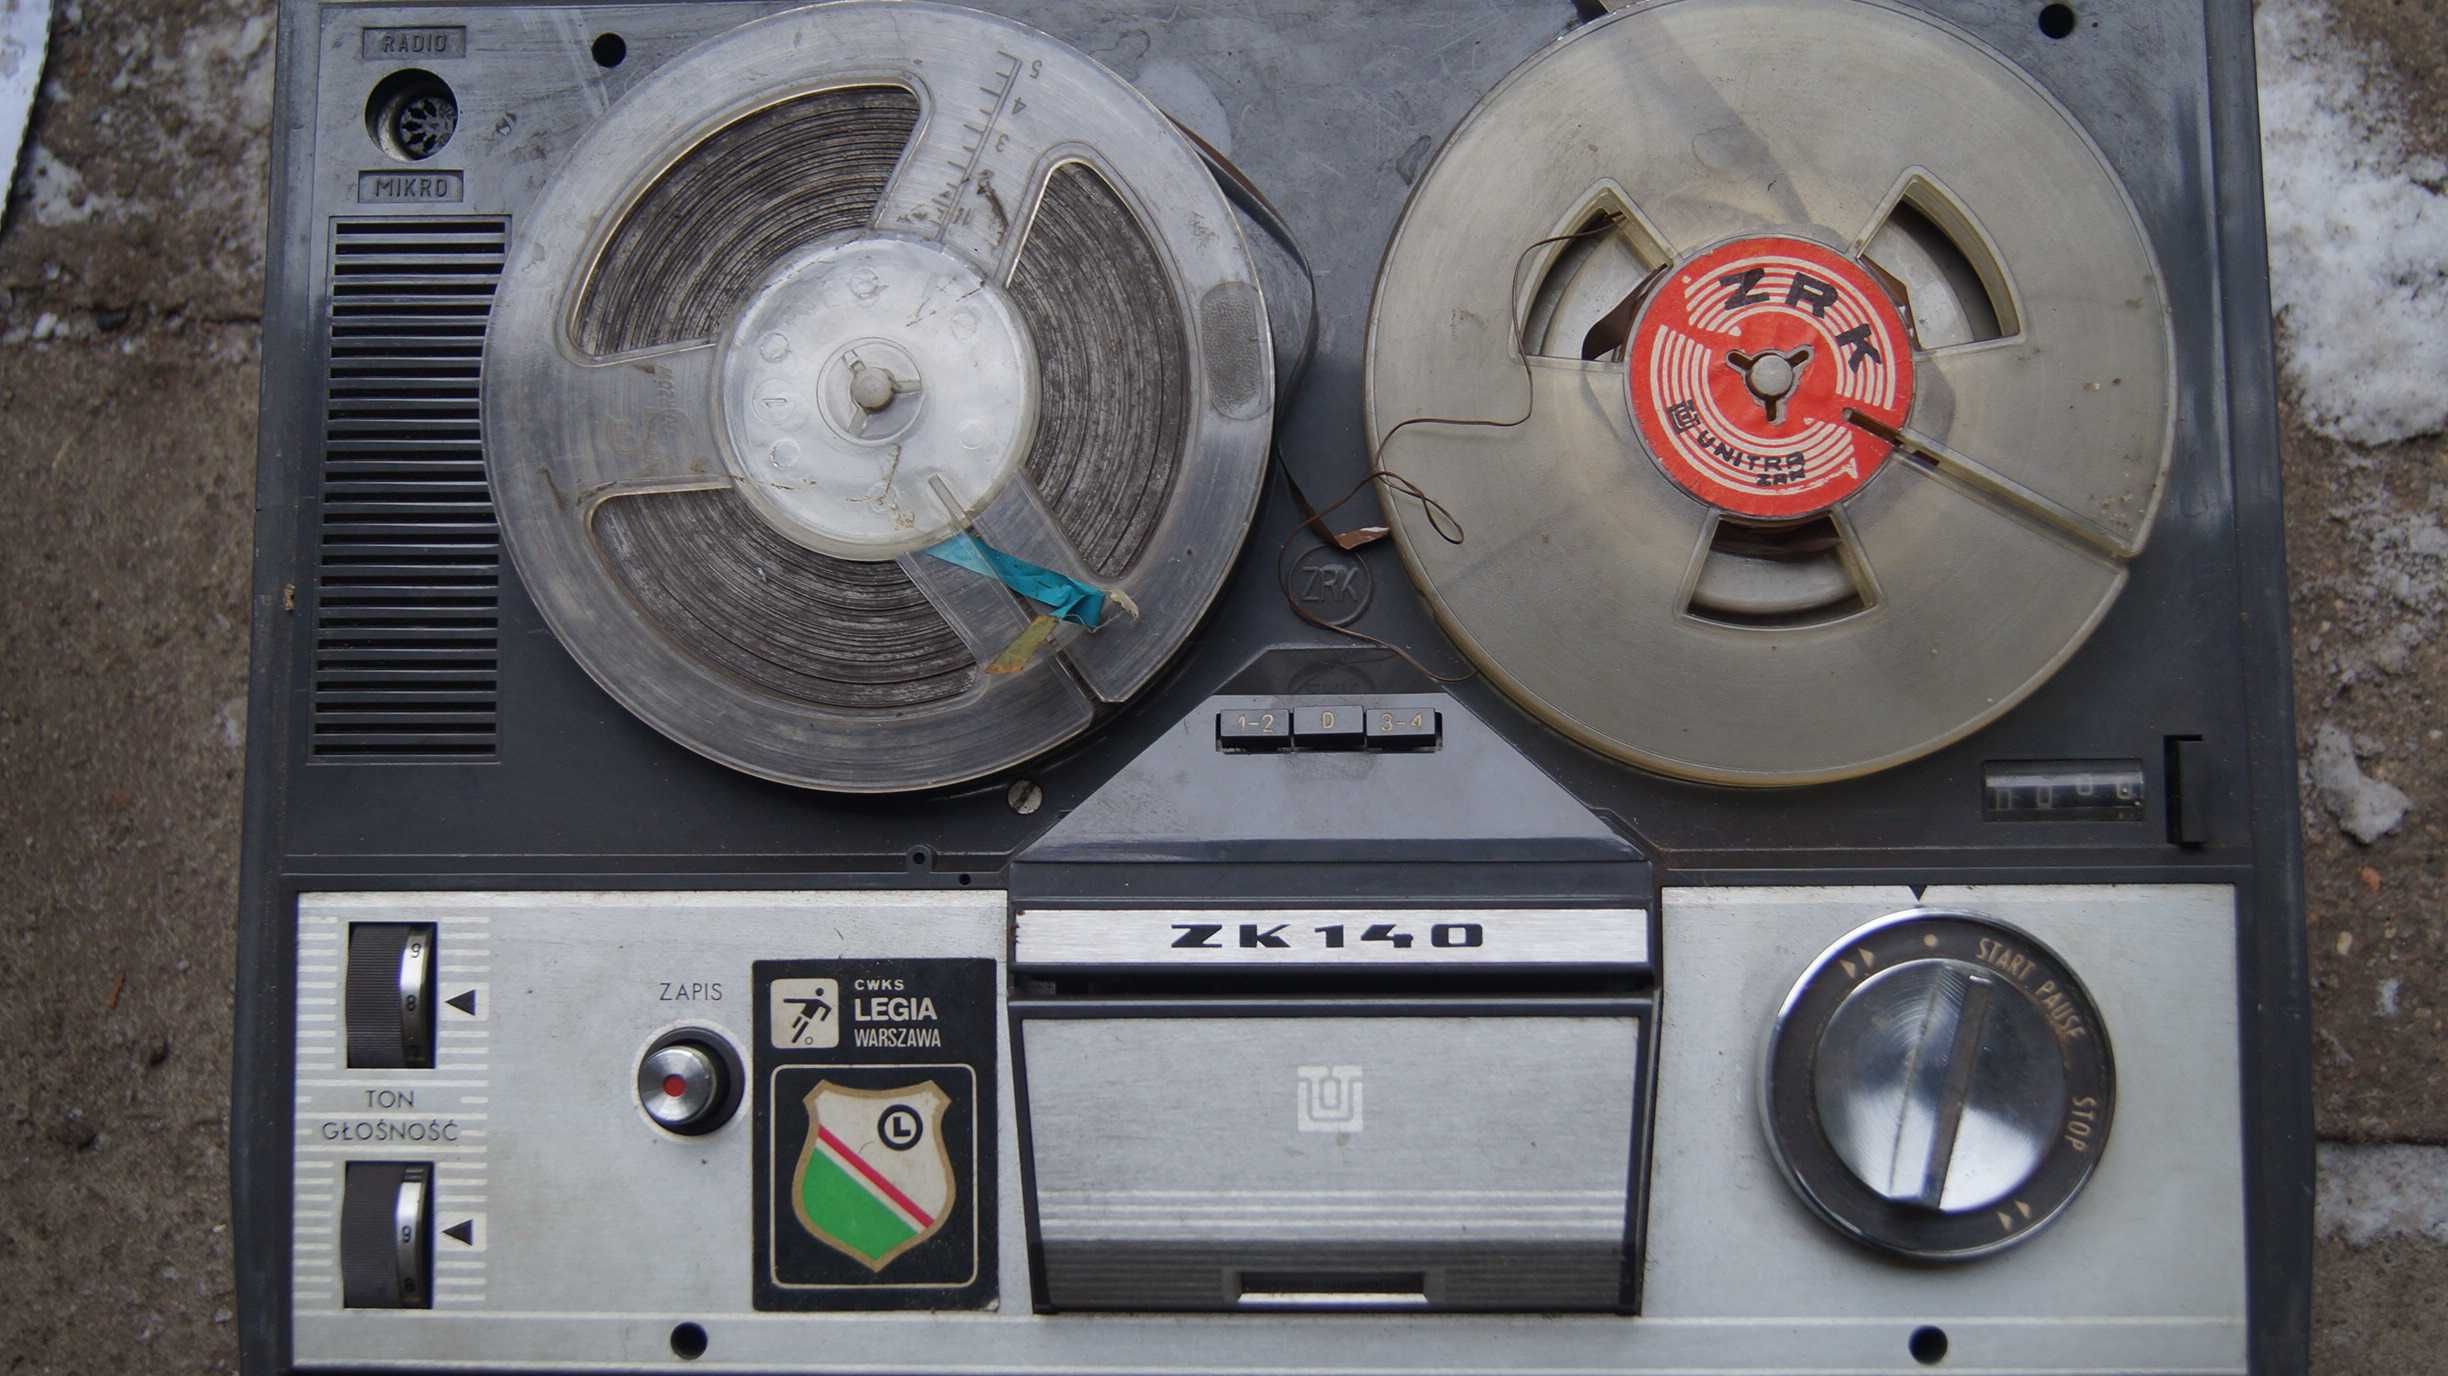 Zabytkowy magnetofon Unitra ZK 140 szpulowy PRL vintage sprawny